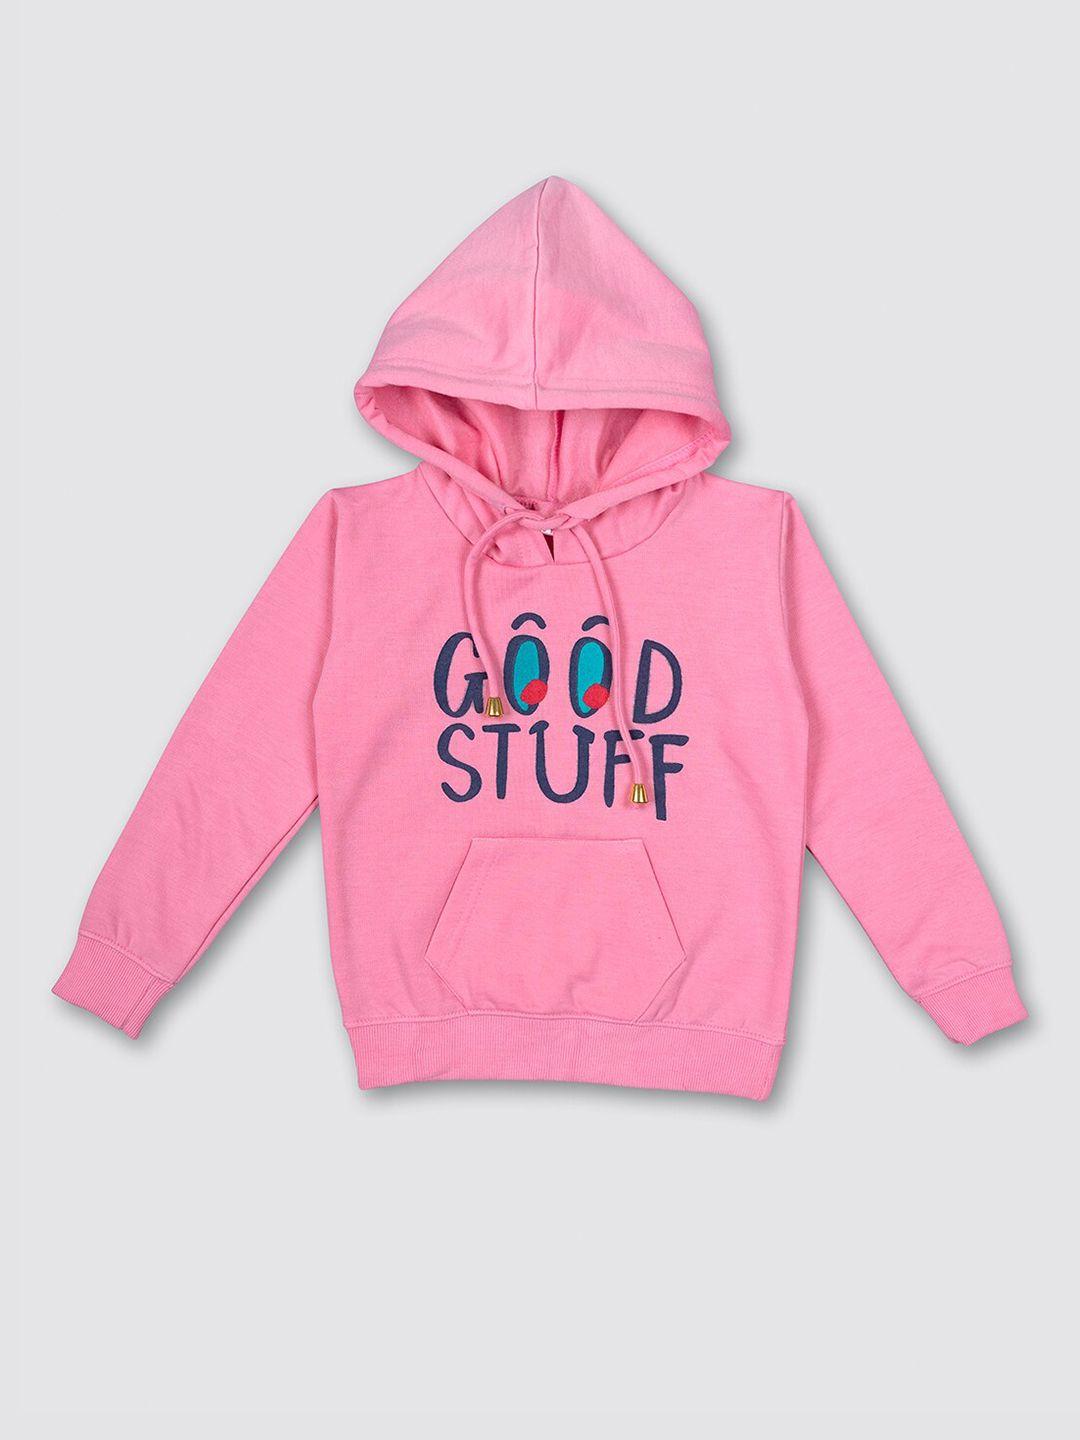 myy kids pink printed hooded fleece sweatshirt